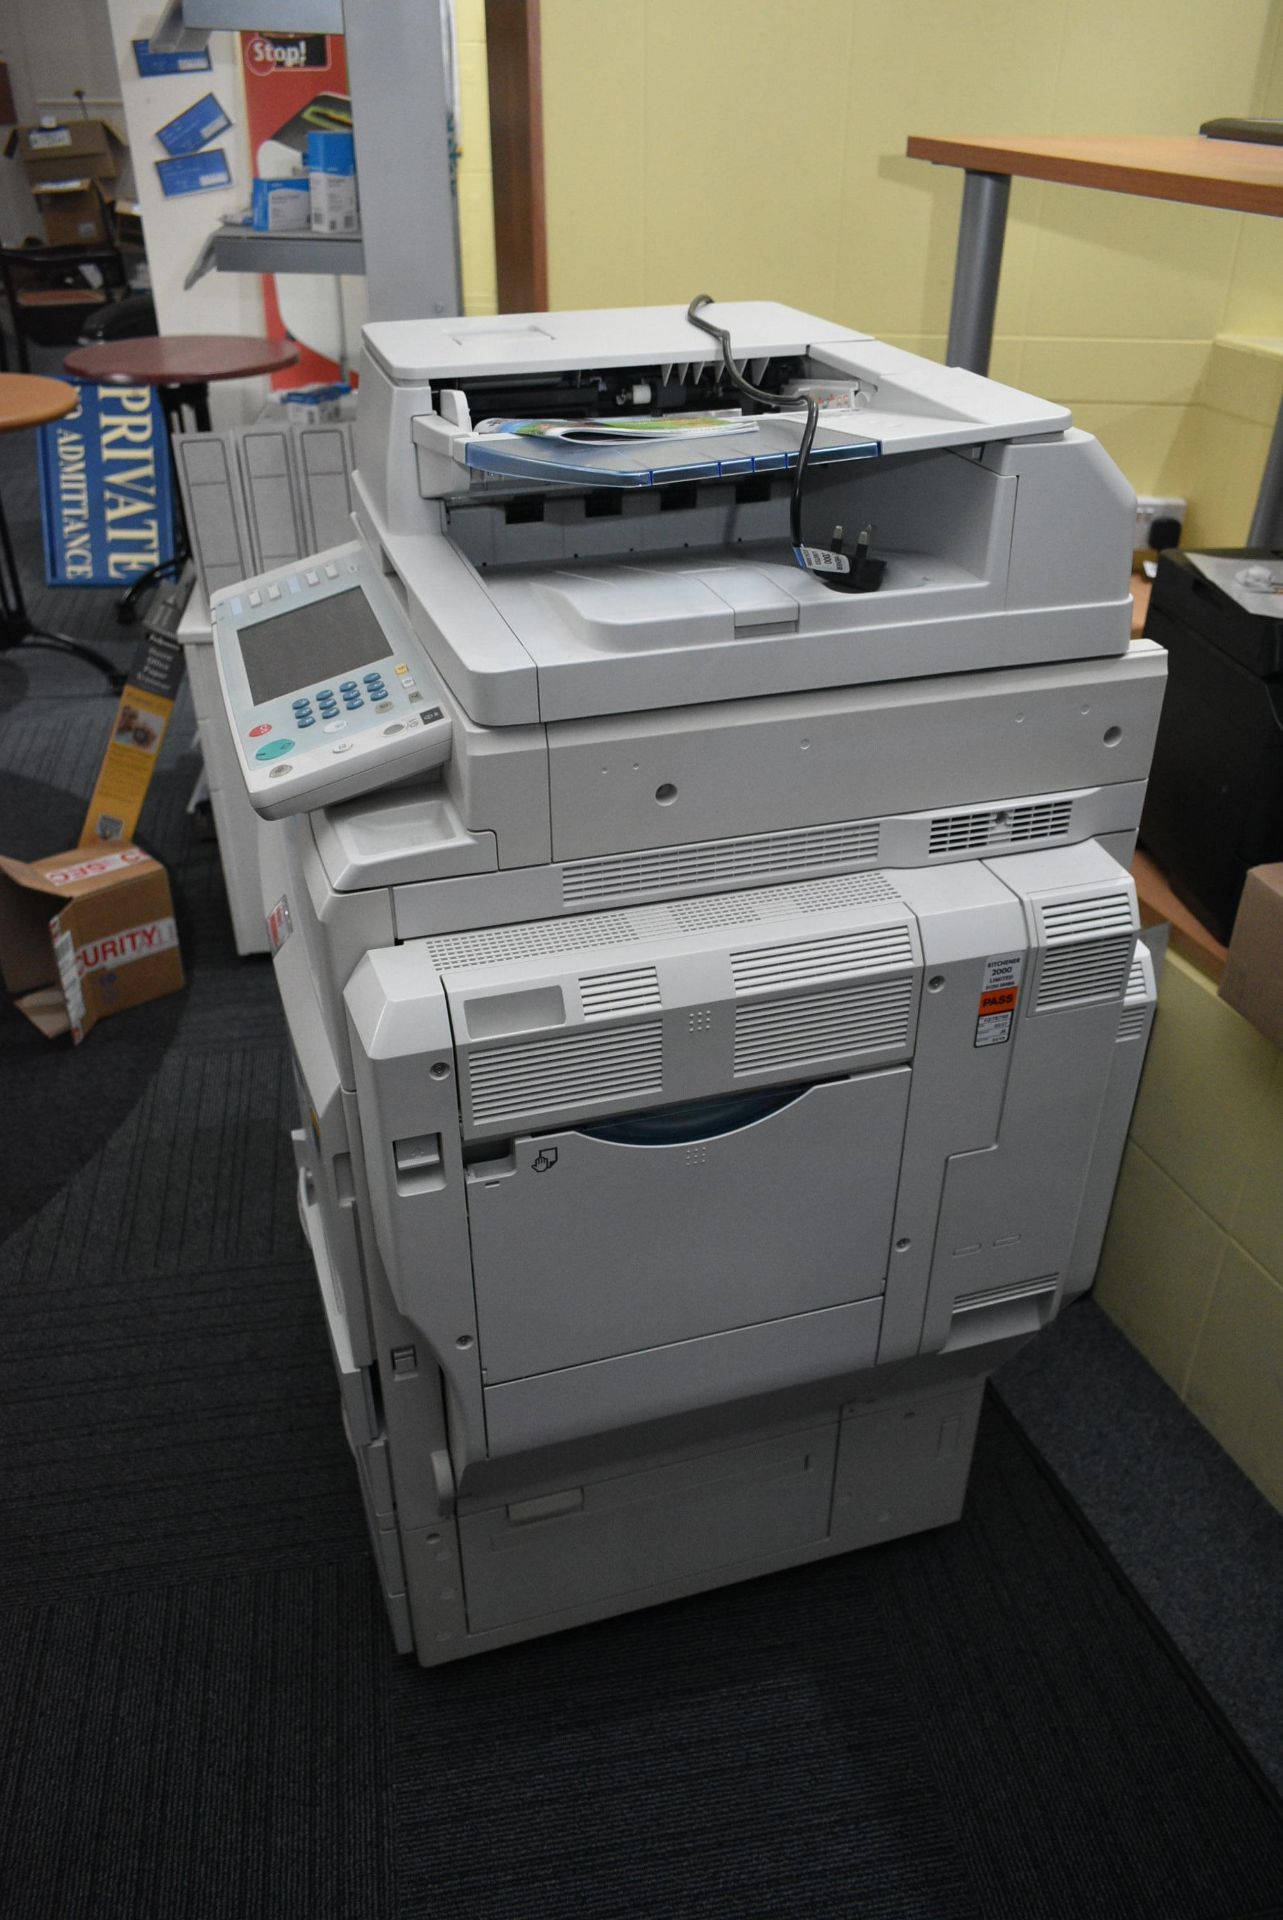 Infotec MPC5501 Photocopier, serial no. V961340013 - Image 2 of 4